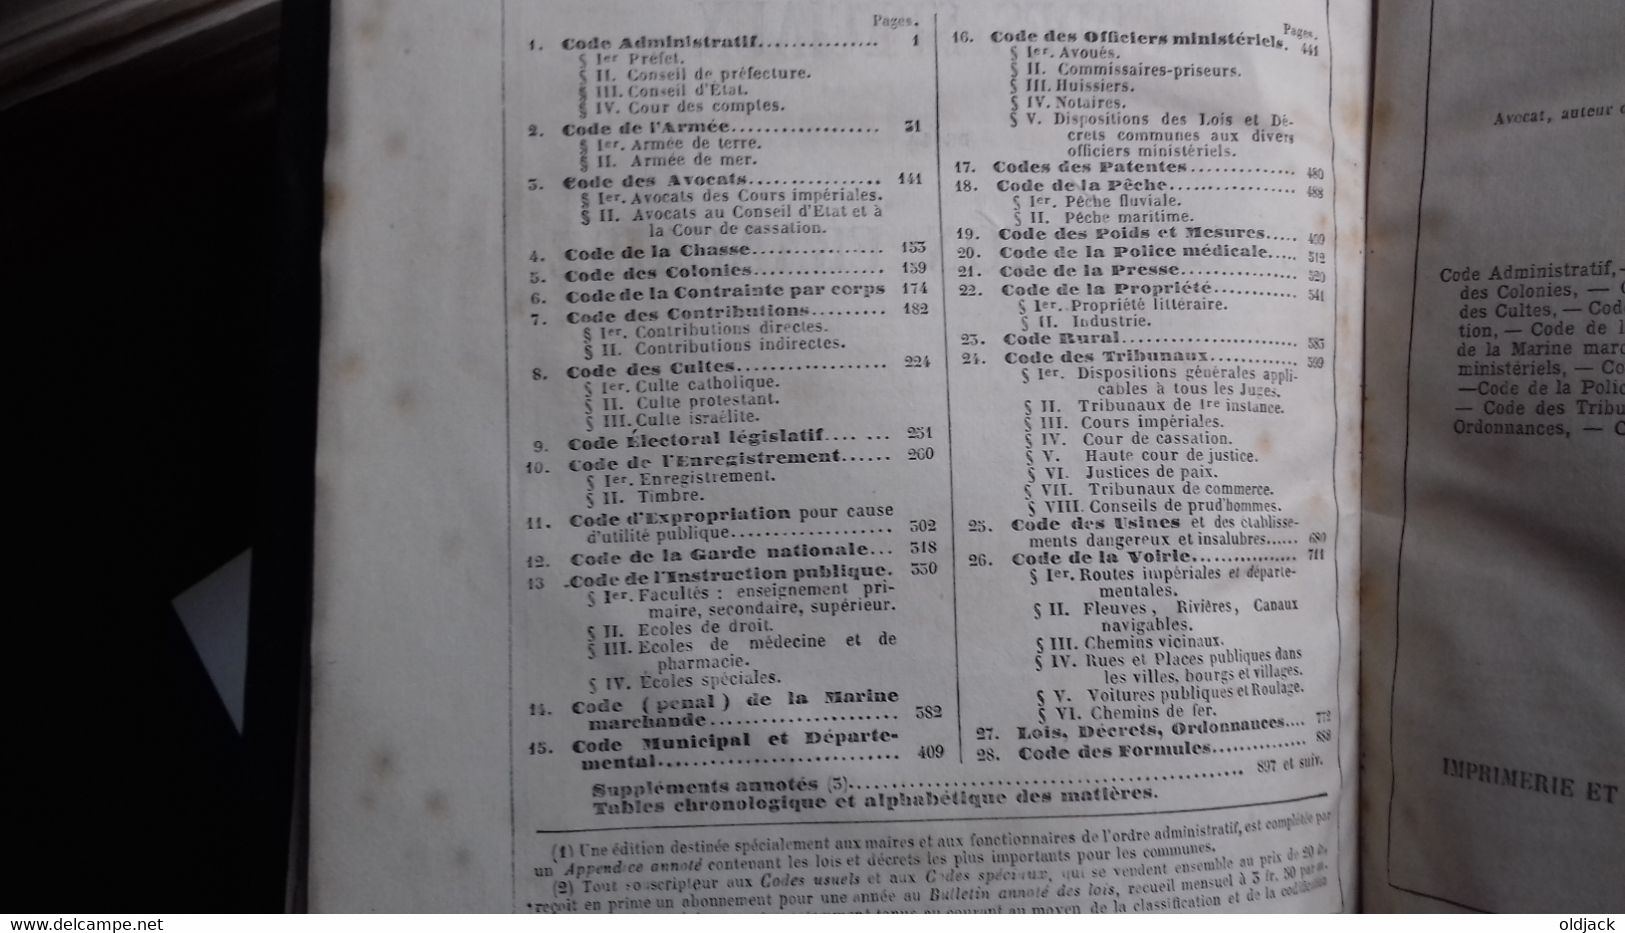 BACQUA Napoléon " Codes spéciaux de la législation Française " imp.DUPONT P.1861(Col1a)